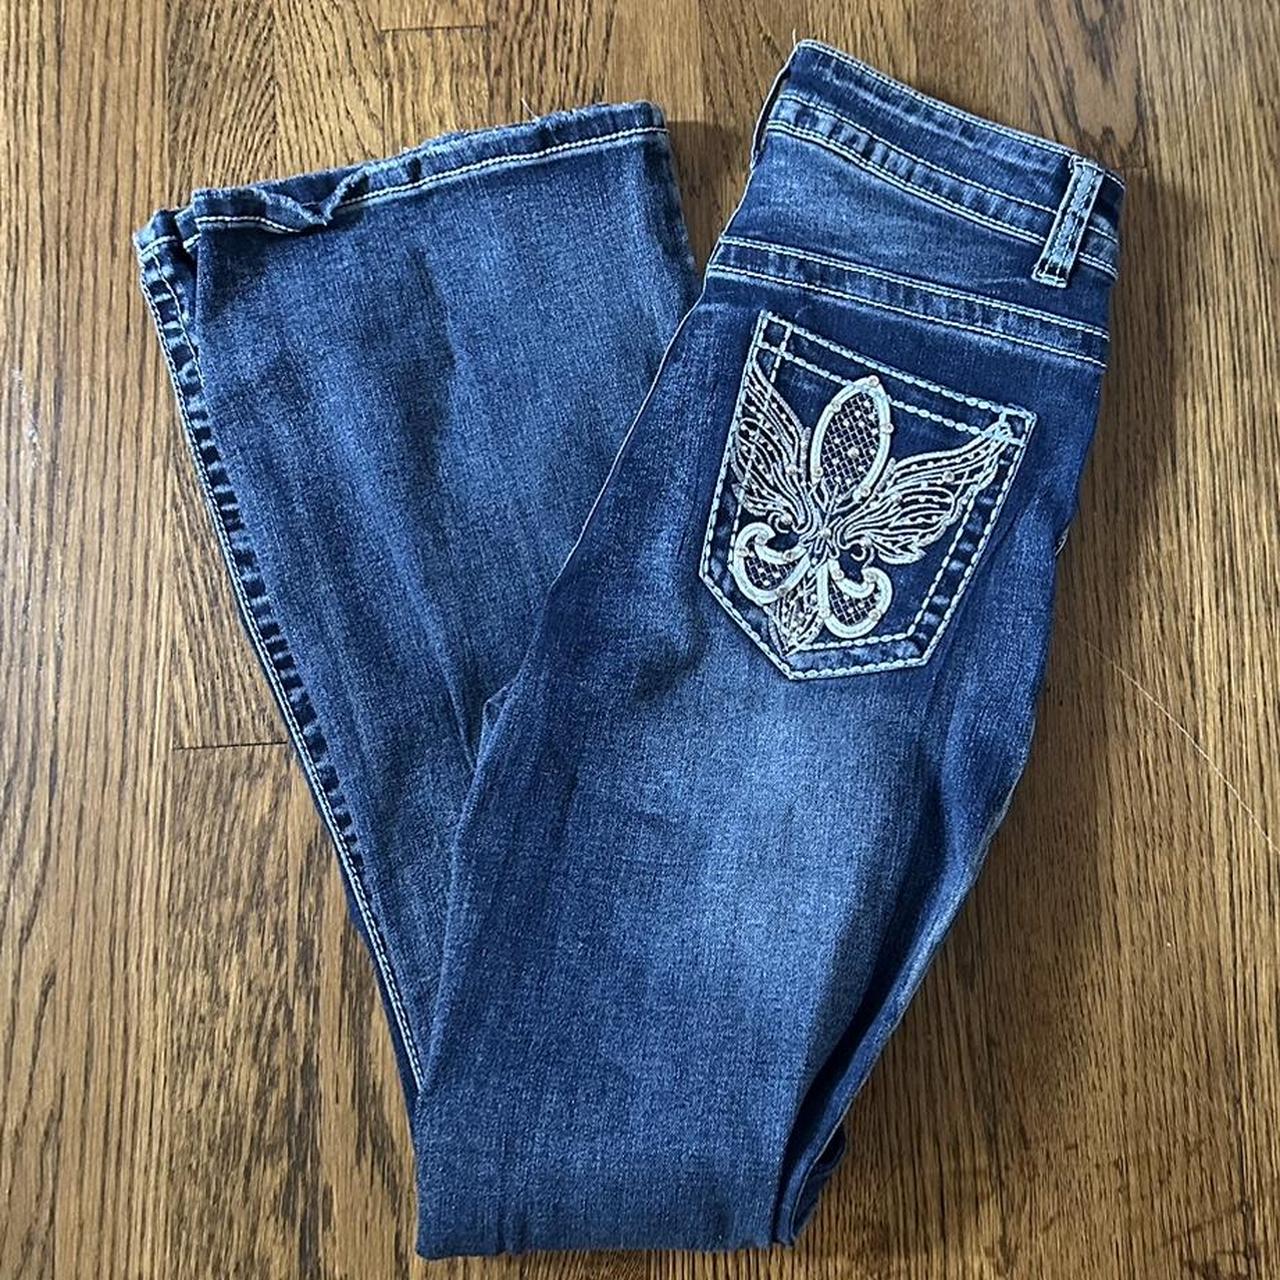 Legend sequin crystal pocket jeans, fits size... - Depop